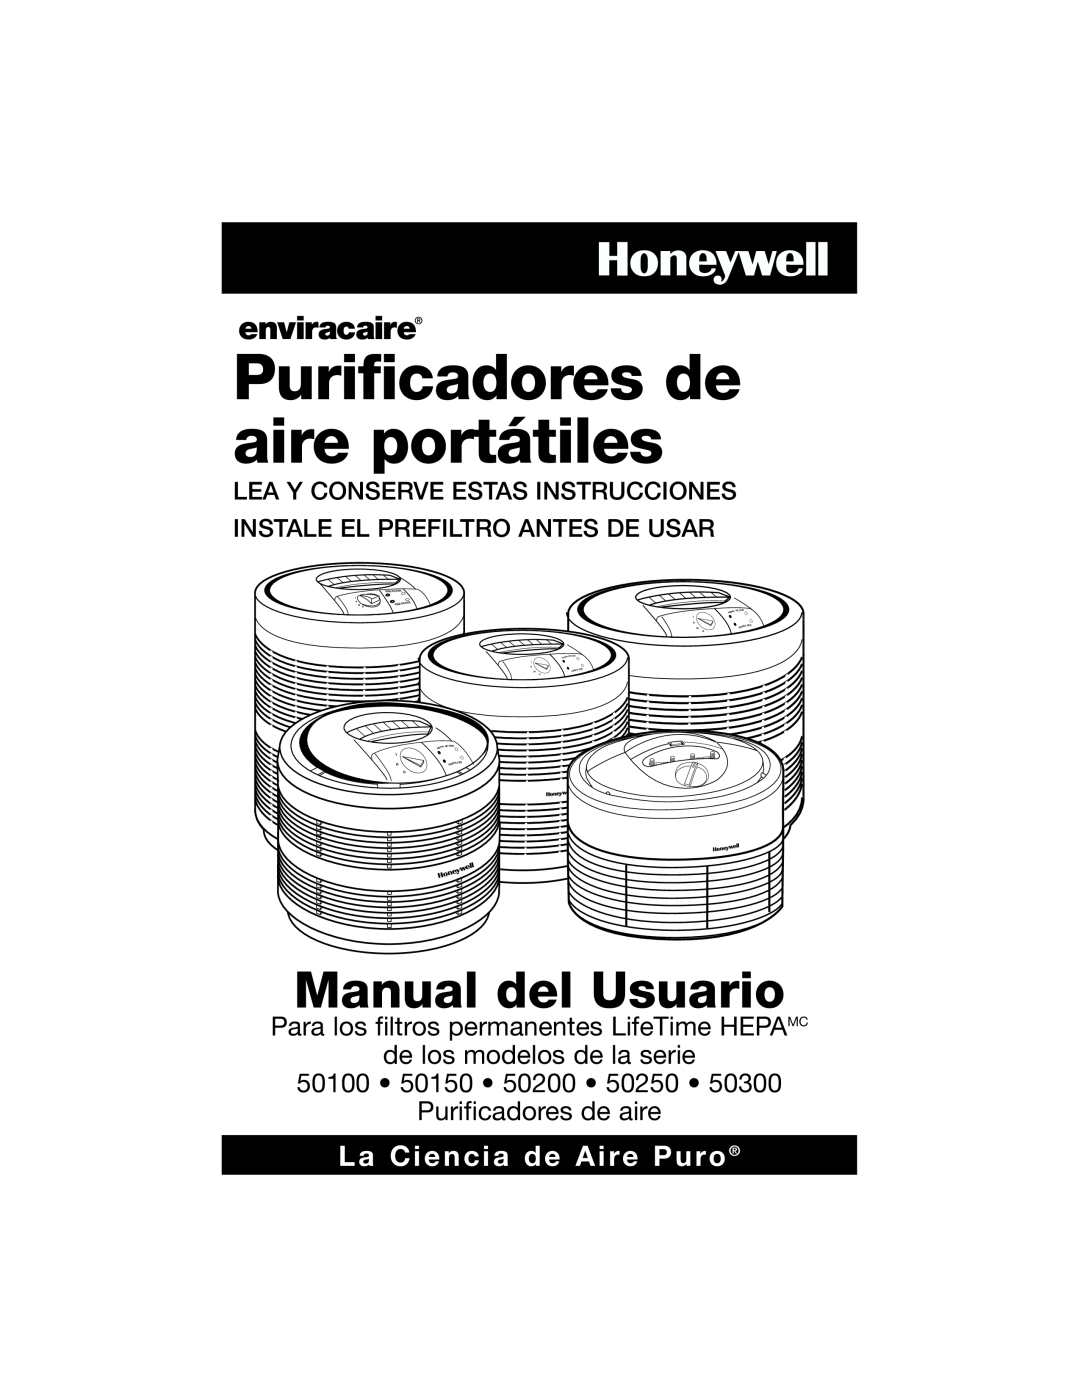 Honeywell 50200 Purificadores de aire portátiles, Manual del Usuario, La Ciencia de Aire Puro, de los modelos de la serie 